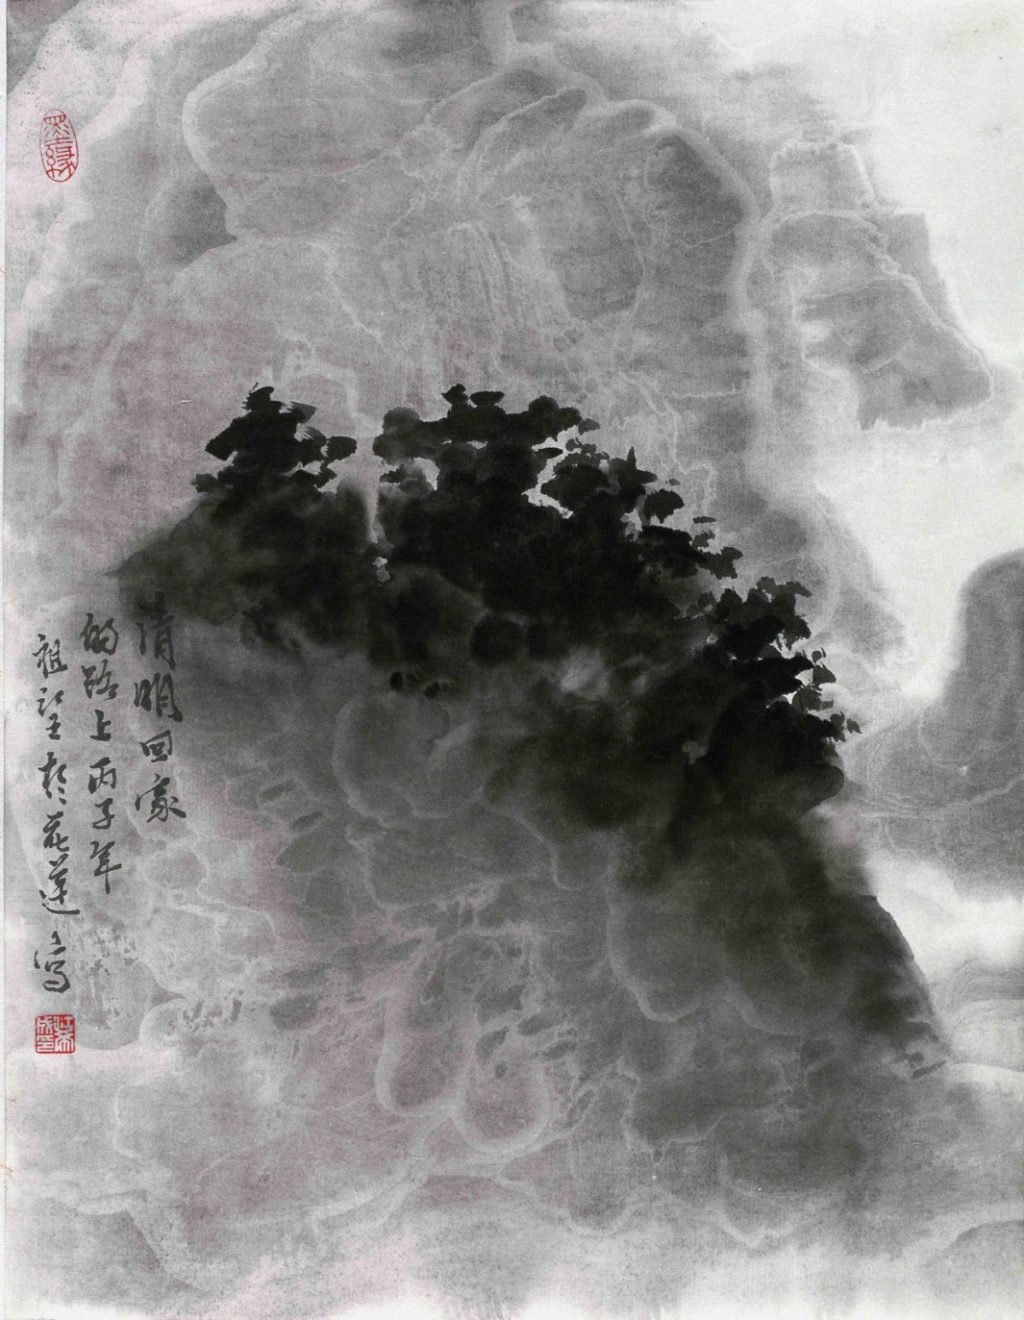 Pluie fine en mars Lavis (34 x 26 cm) de Chiang Tsu-Wang, Peintre et calligraphe taiwanais.